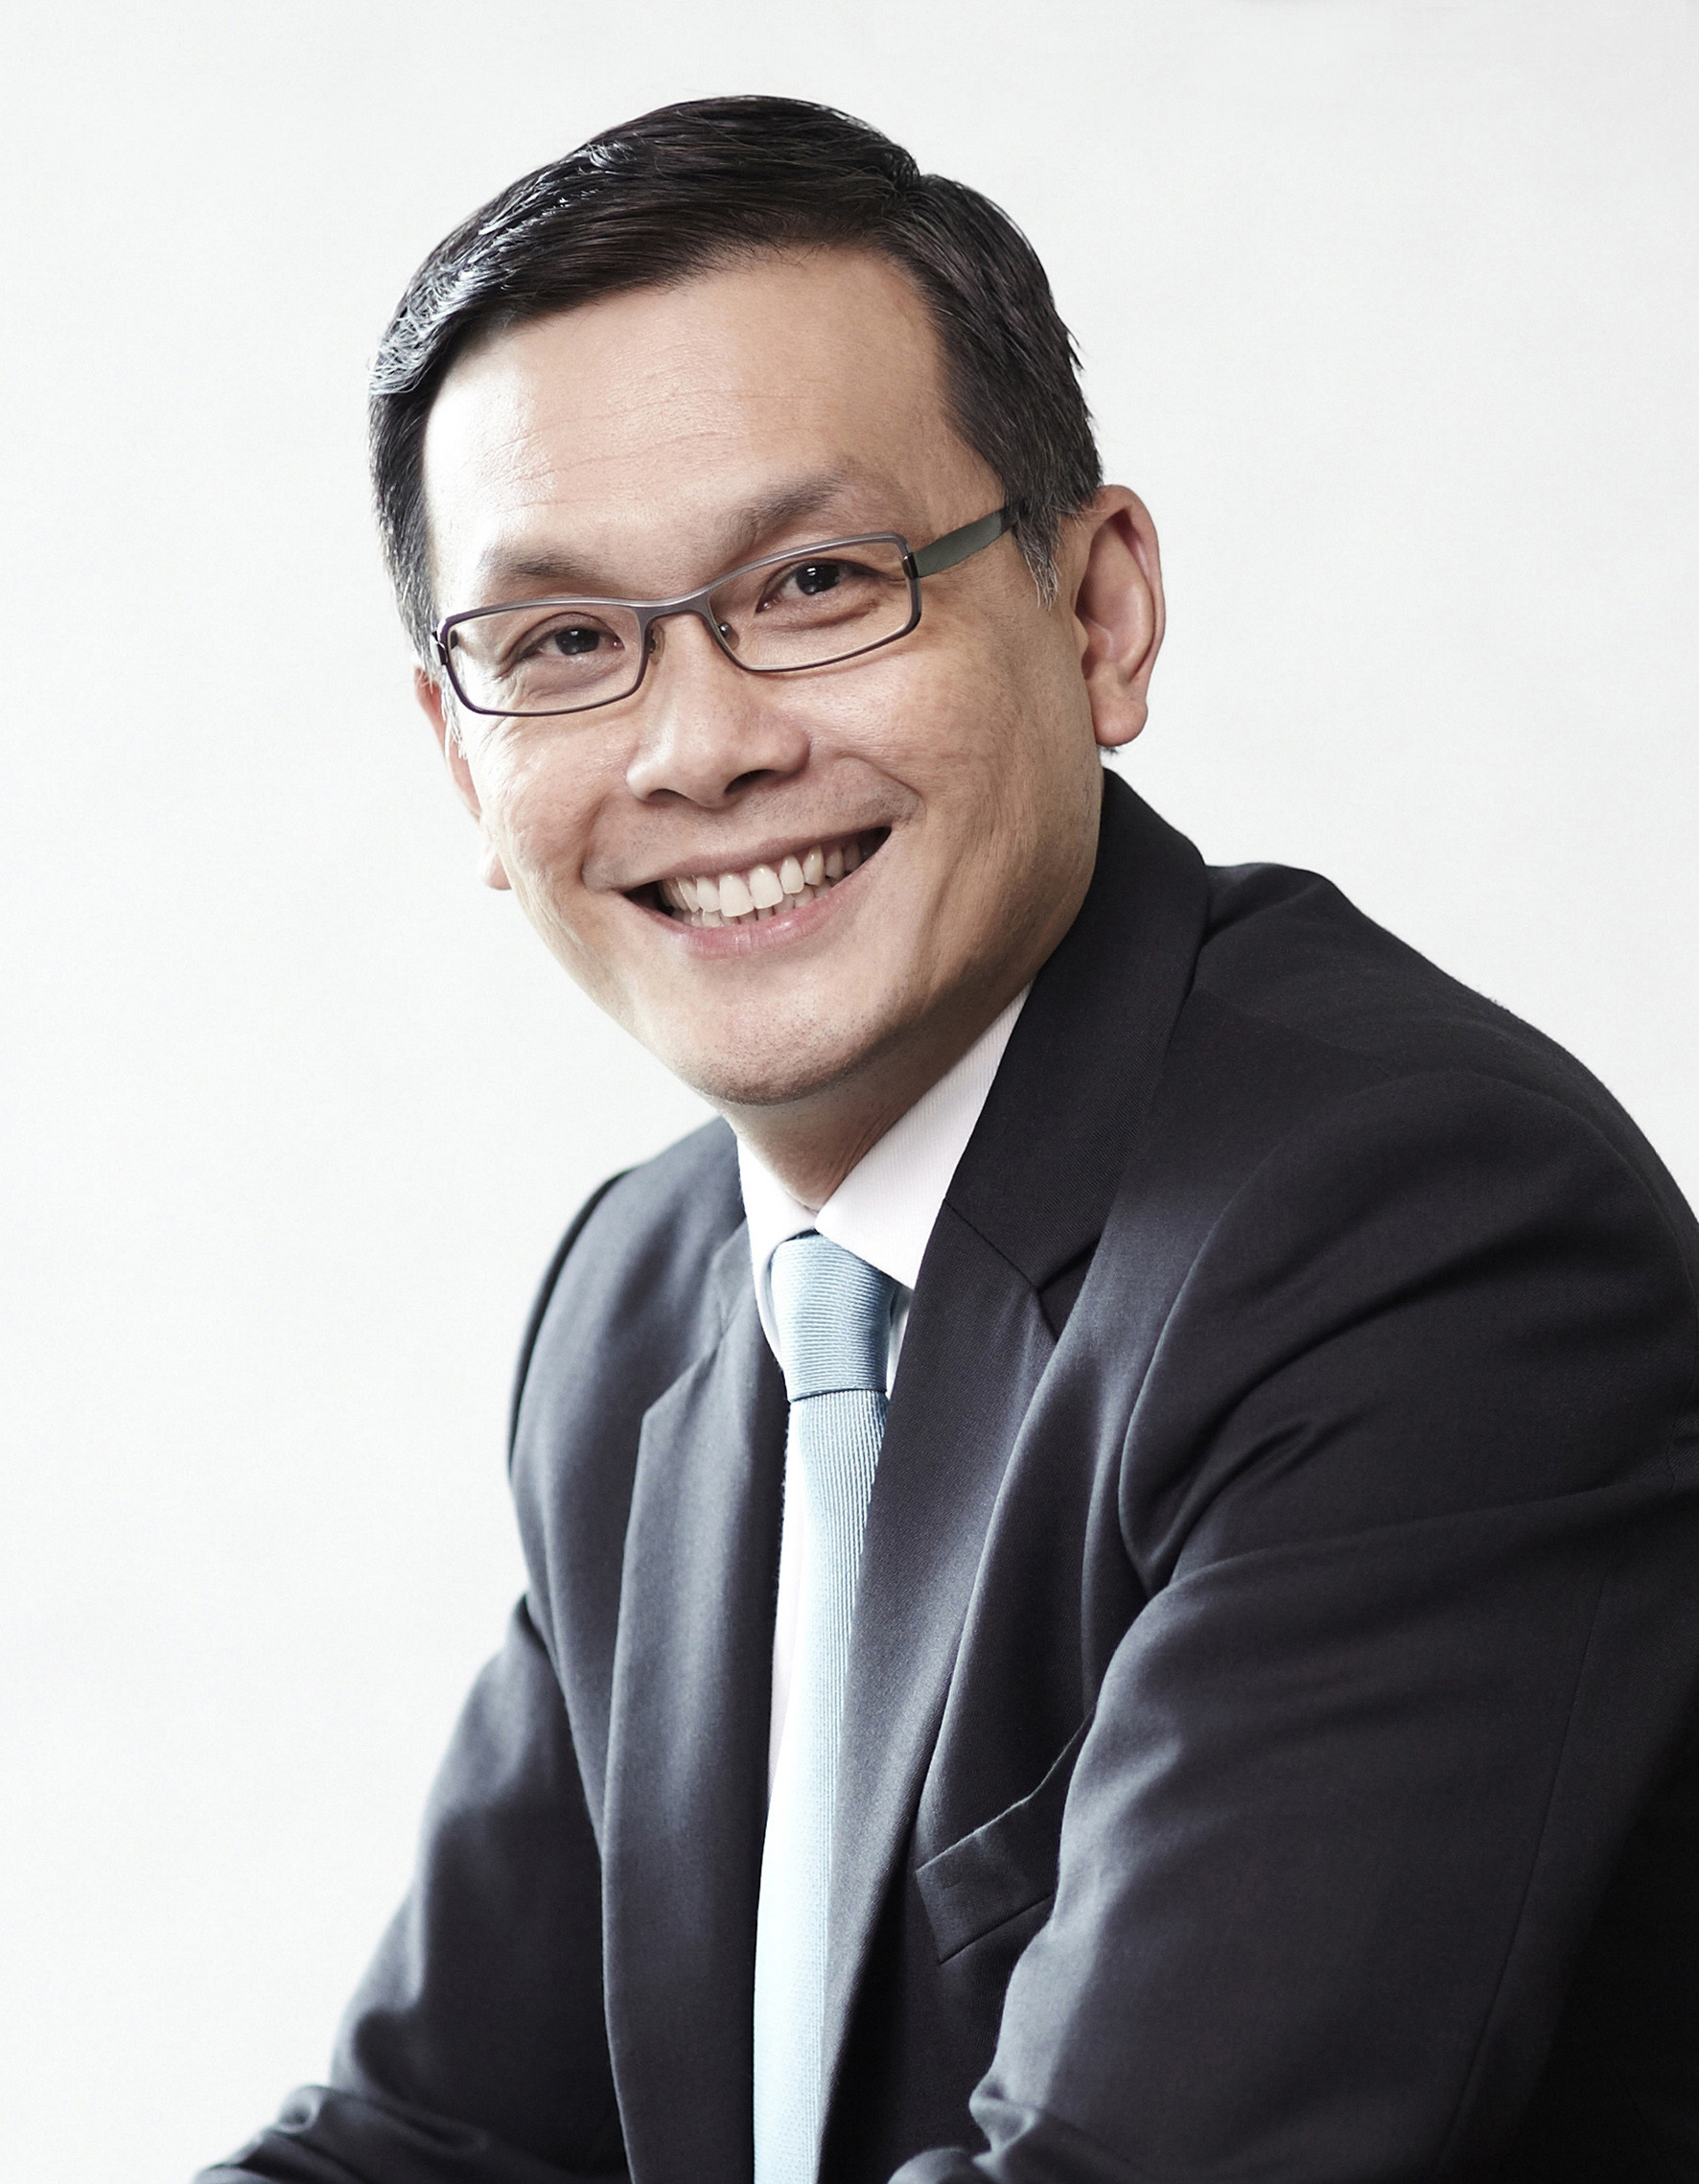 Ông Teo Eng Cheong, Giám đốc Quốc tế, Tập đoàn Surbana Jurong - Singapore. (Nguồn mynewsdesk.com)